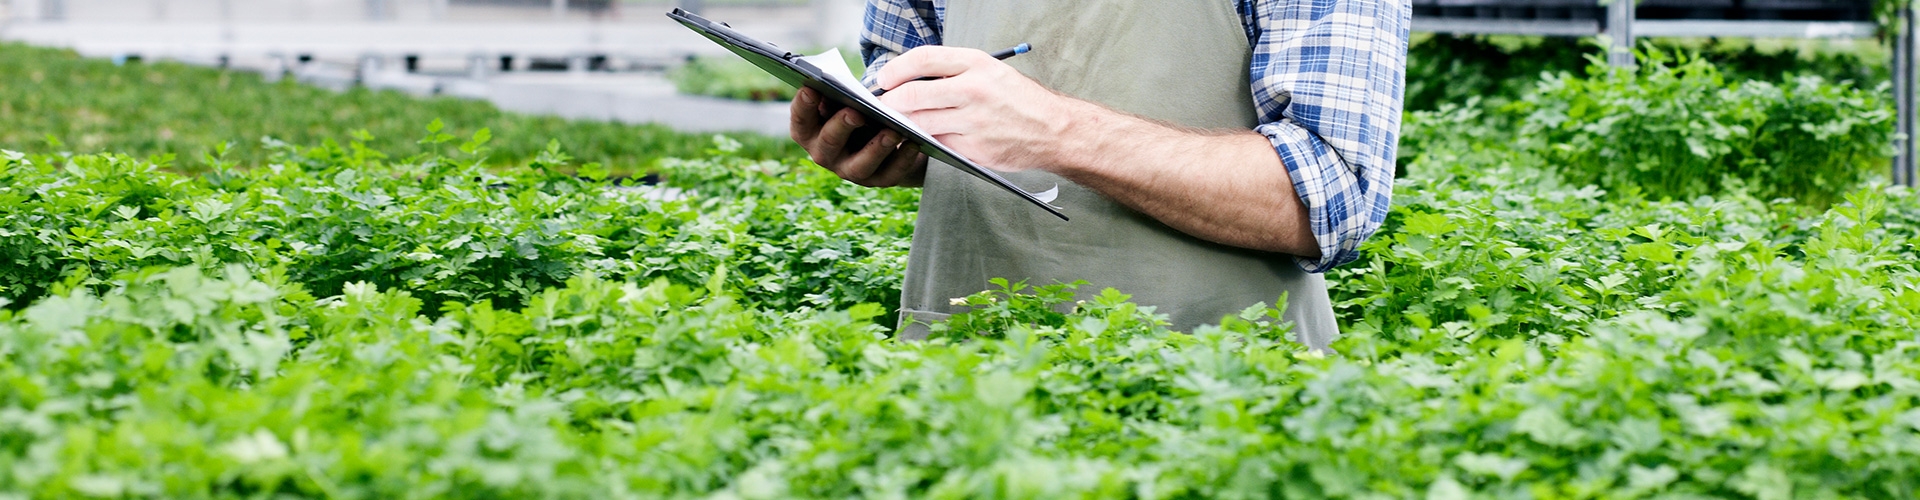 Seguro Agrario especializado para riesgos en cultivos herbáceos - Hombre vestido con camisa de cuadros y delantal evaluando la producción de herbáceos en el campo